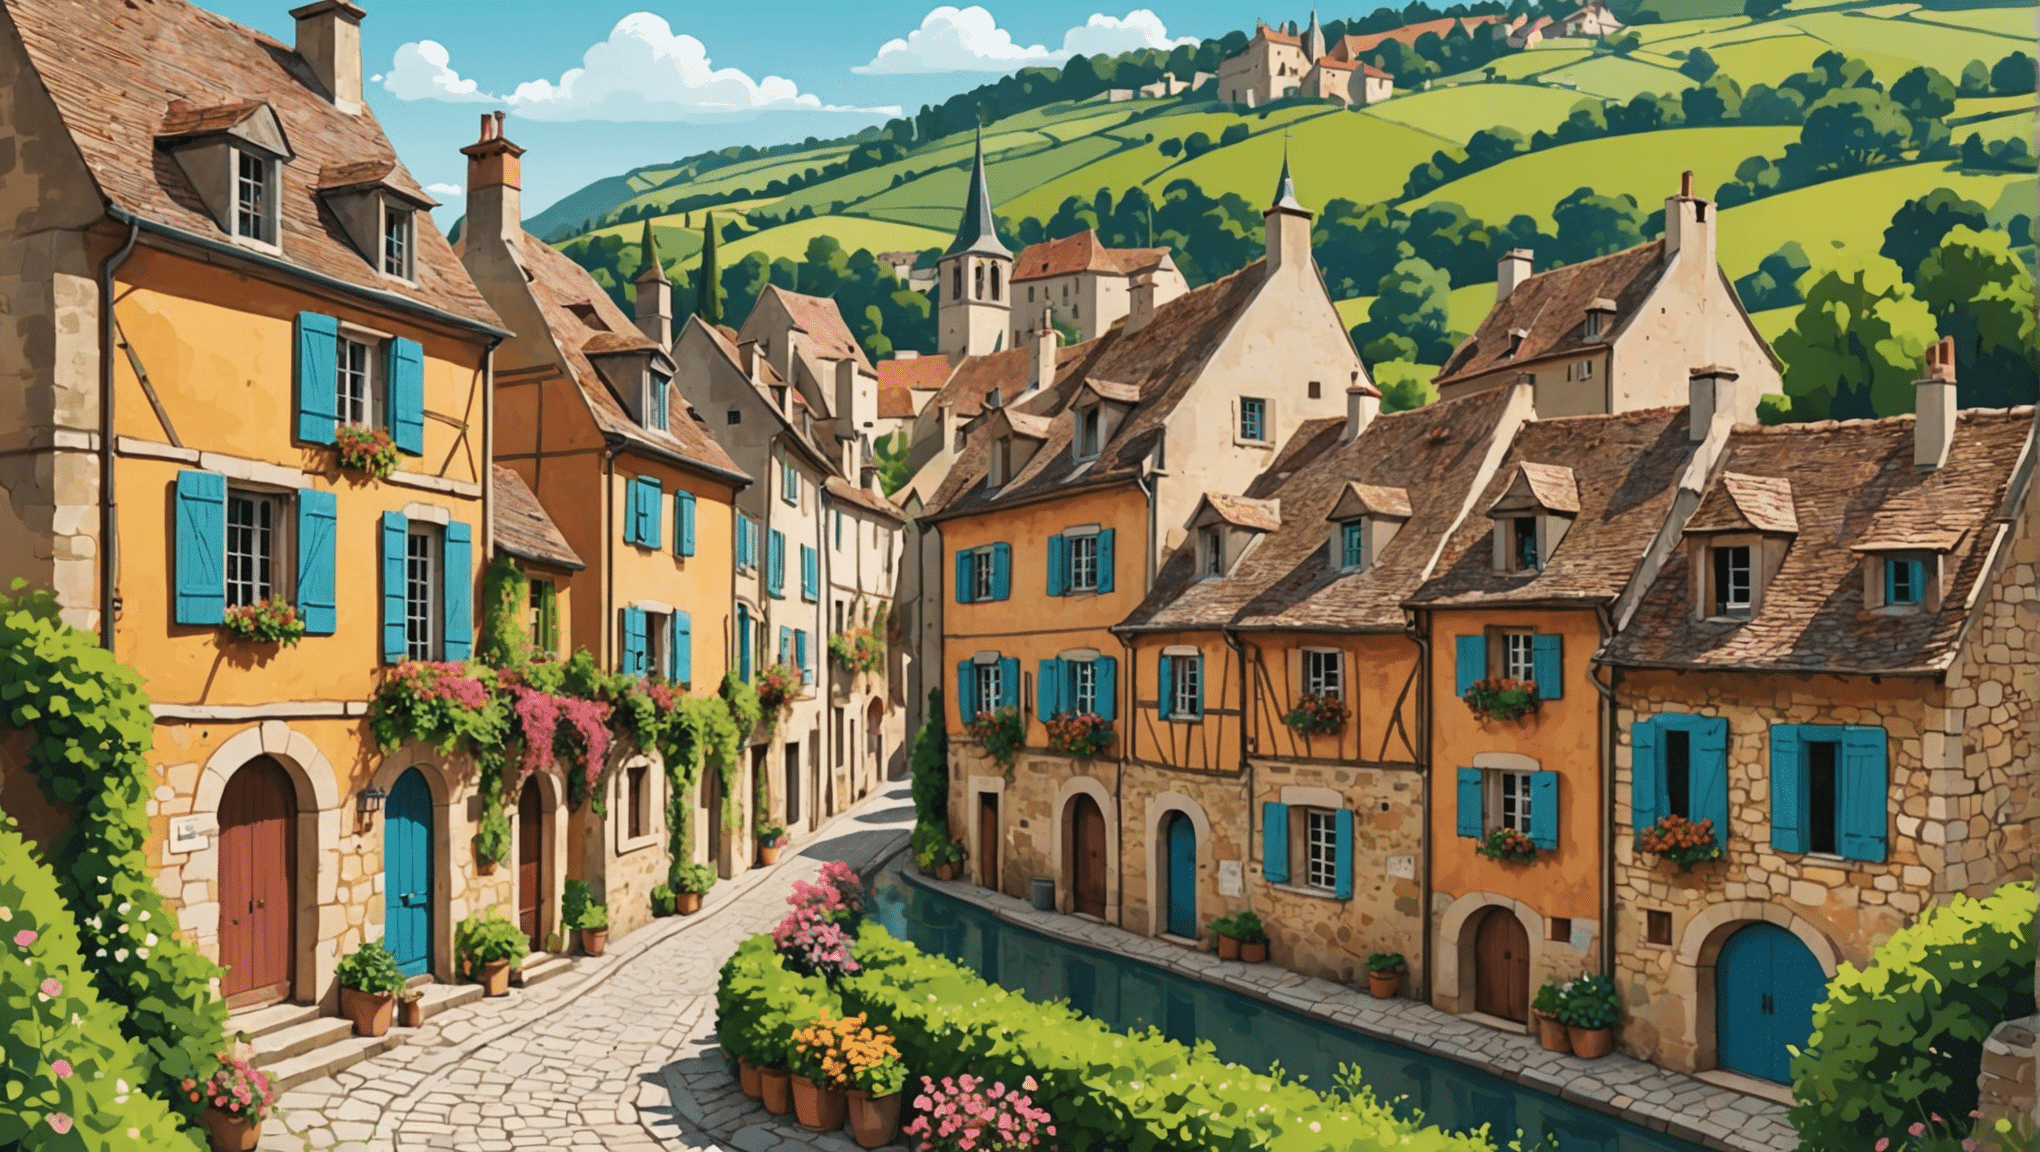 通过我们的精选精选发现法国最美丽的村庄。绝对值得参观的宝藏，享受真实而风景如画的度假。